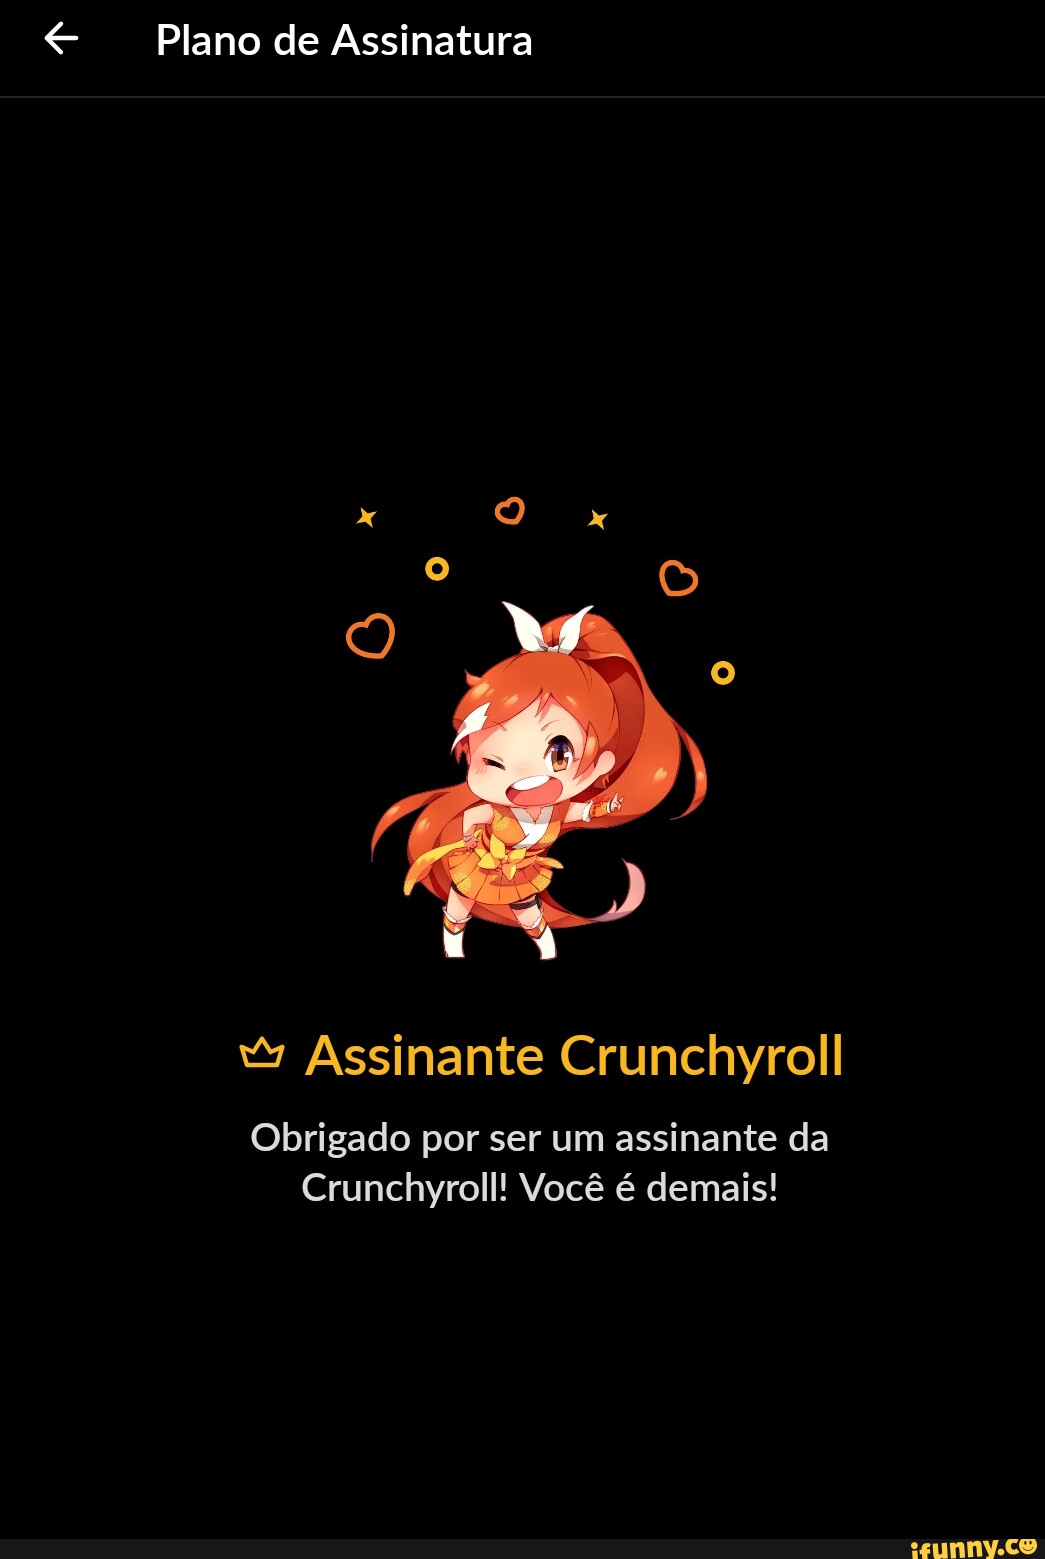 Como assinar Crunchyroll? Planos, formas de pagamento e mais